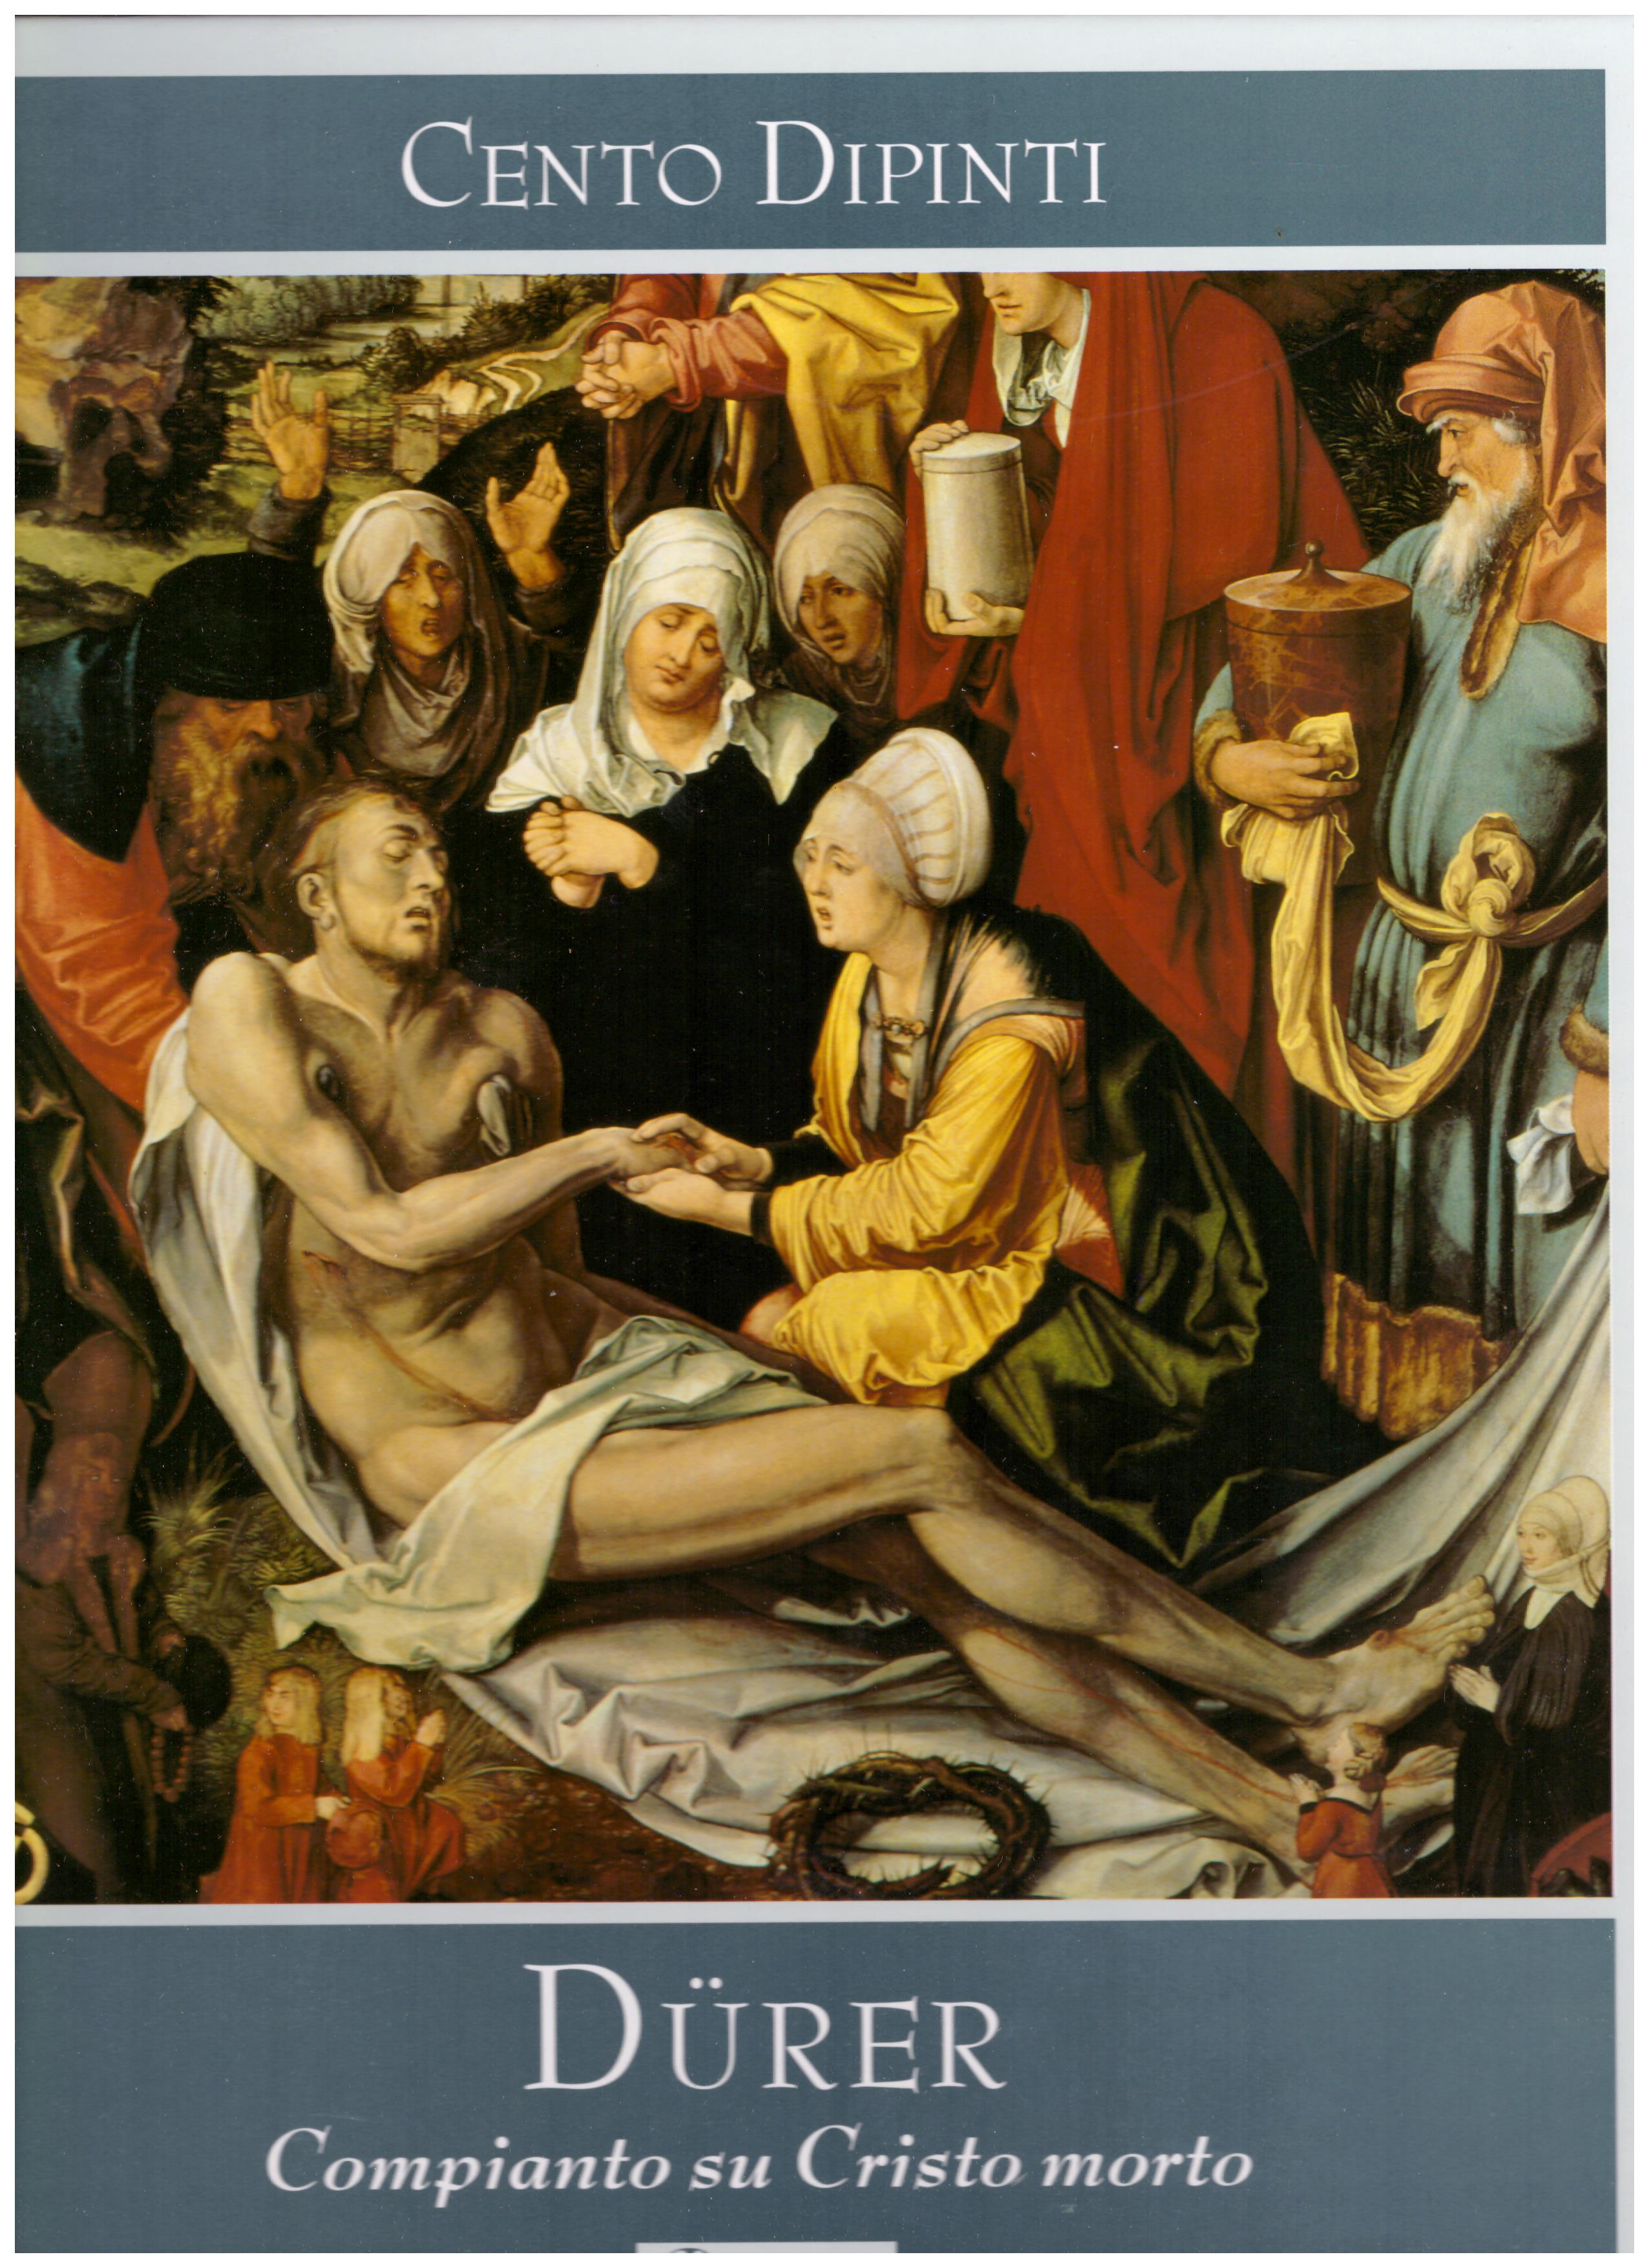 Titolo: Cento dipinti, Durer compianto su Cristo morto Autore : AA.VV.  Editore: Rizzoli